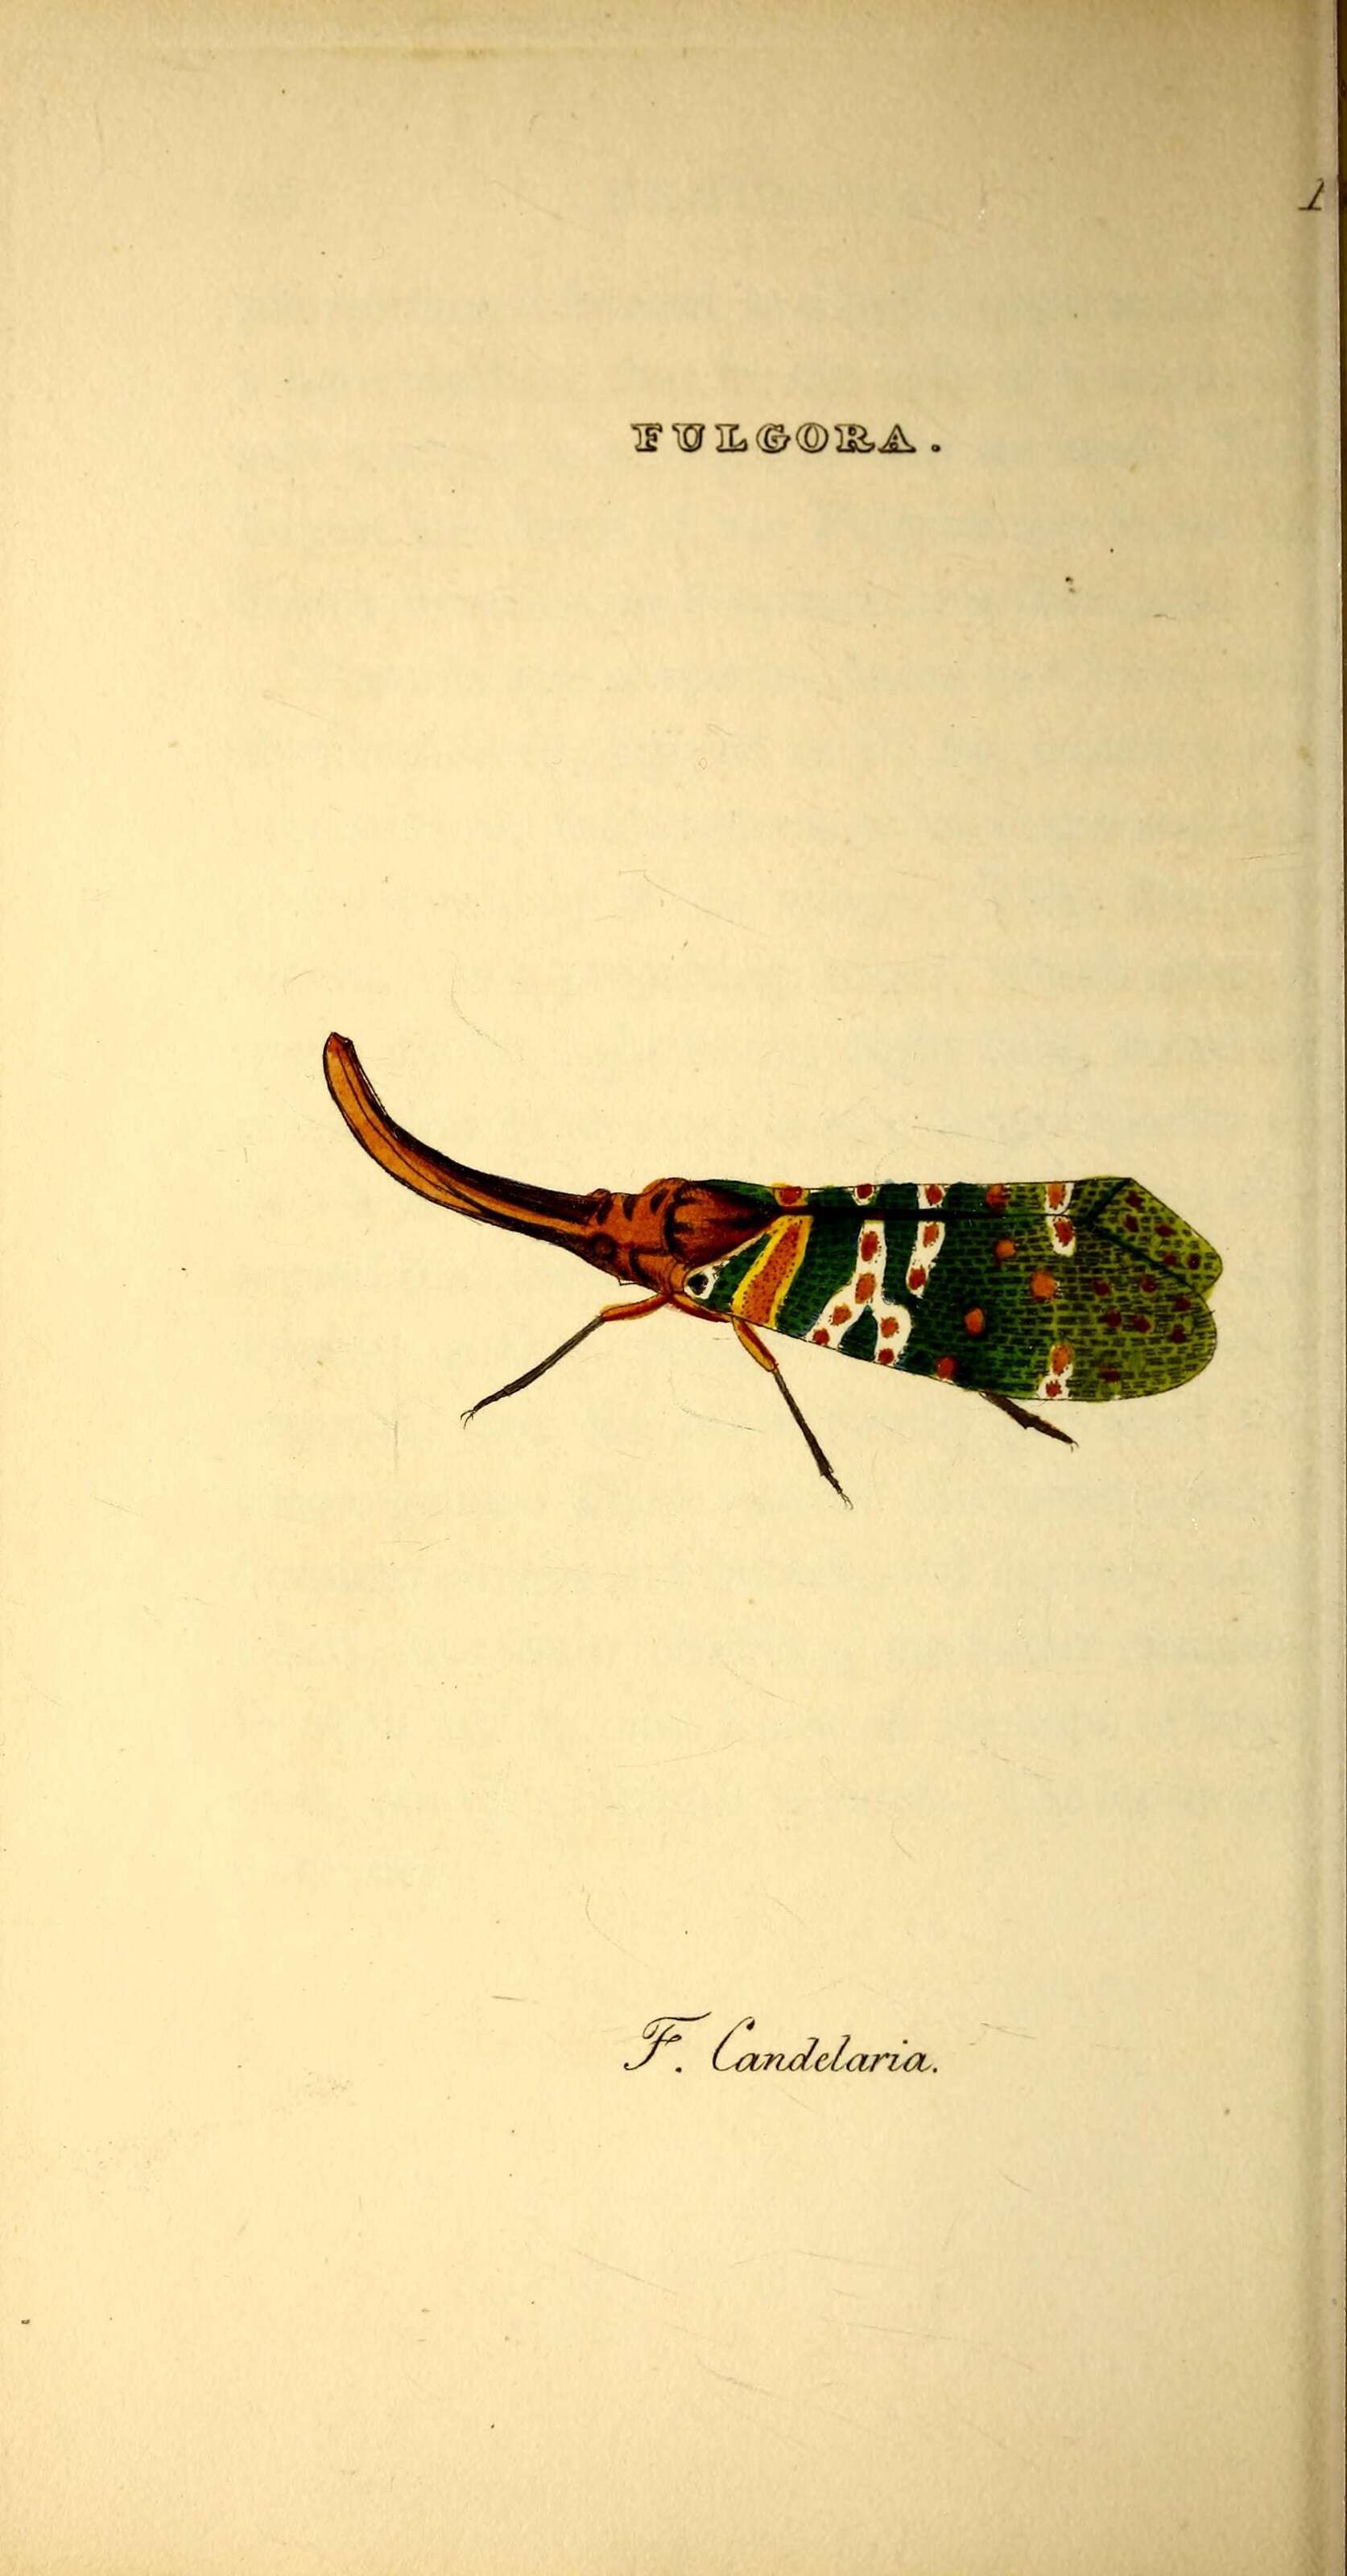 Image of fulgorid planthoppers